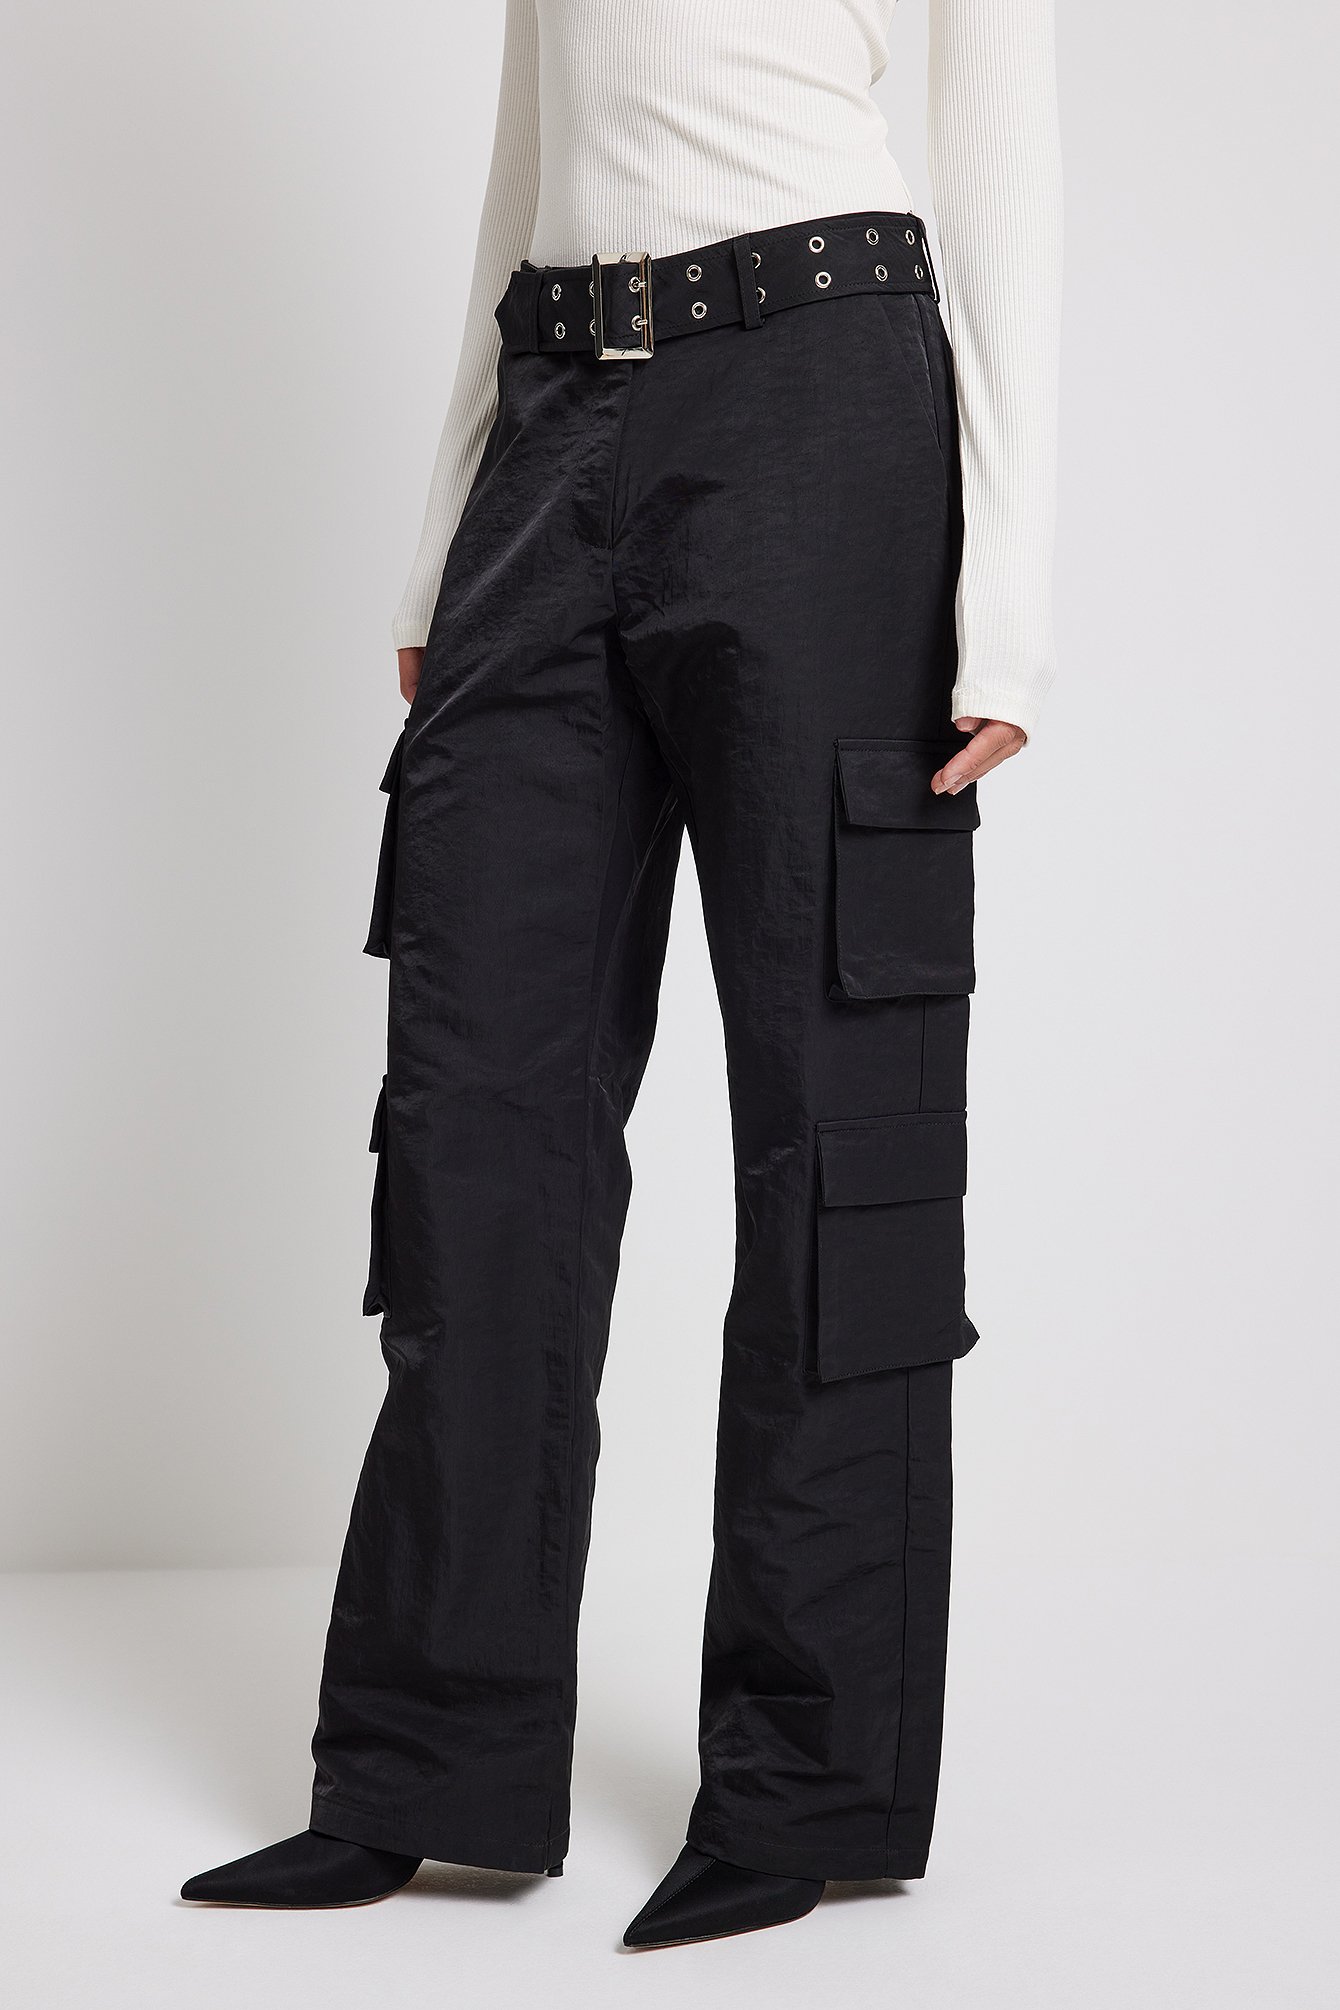 Buy Black Trousers  Pants for Men by BREAKBOUNCE Online  Ajiocom